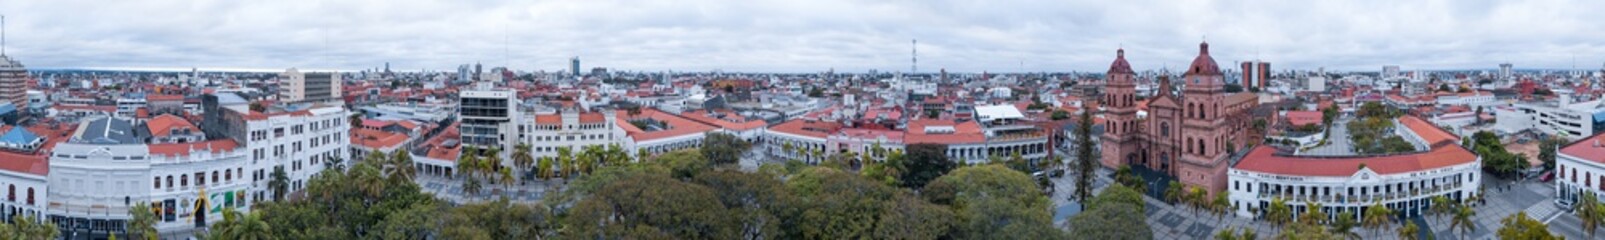 Aerial panorama of the city of Santa Cruz de La Sierra in Bolivia